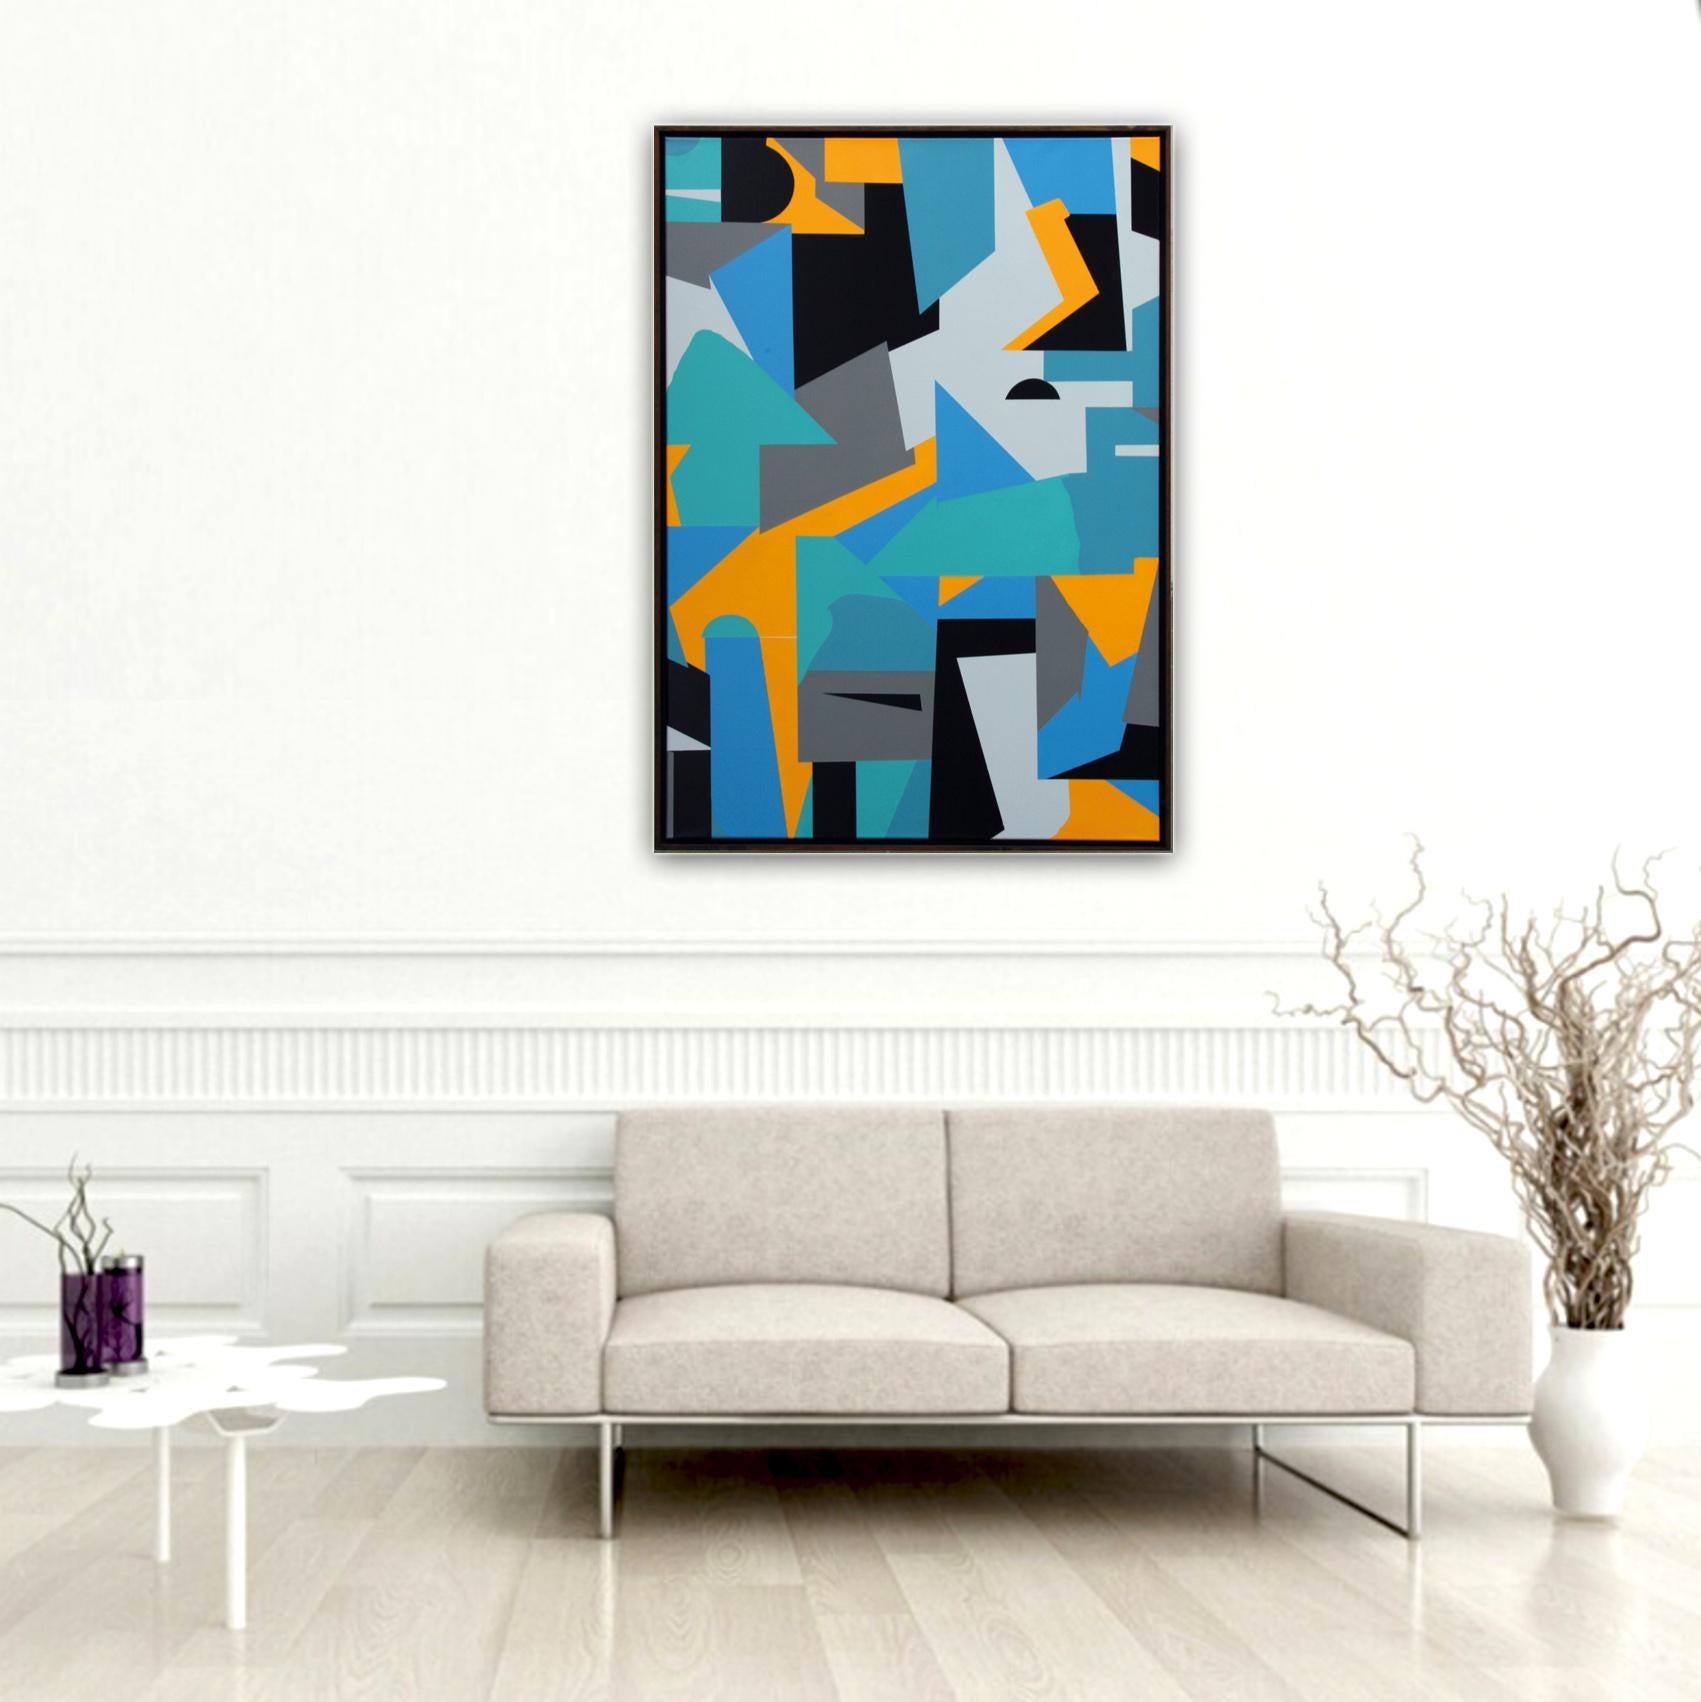 Artiste : Kera

Abstraction géométrique en blanc, jaune, noir et bleu

Médium : Acrylique et peinture en spray sur toile, encadré dans un cadre en bois fin.

Taille : 130 x 90 cm

Peinture